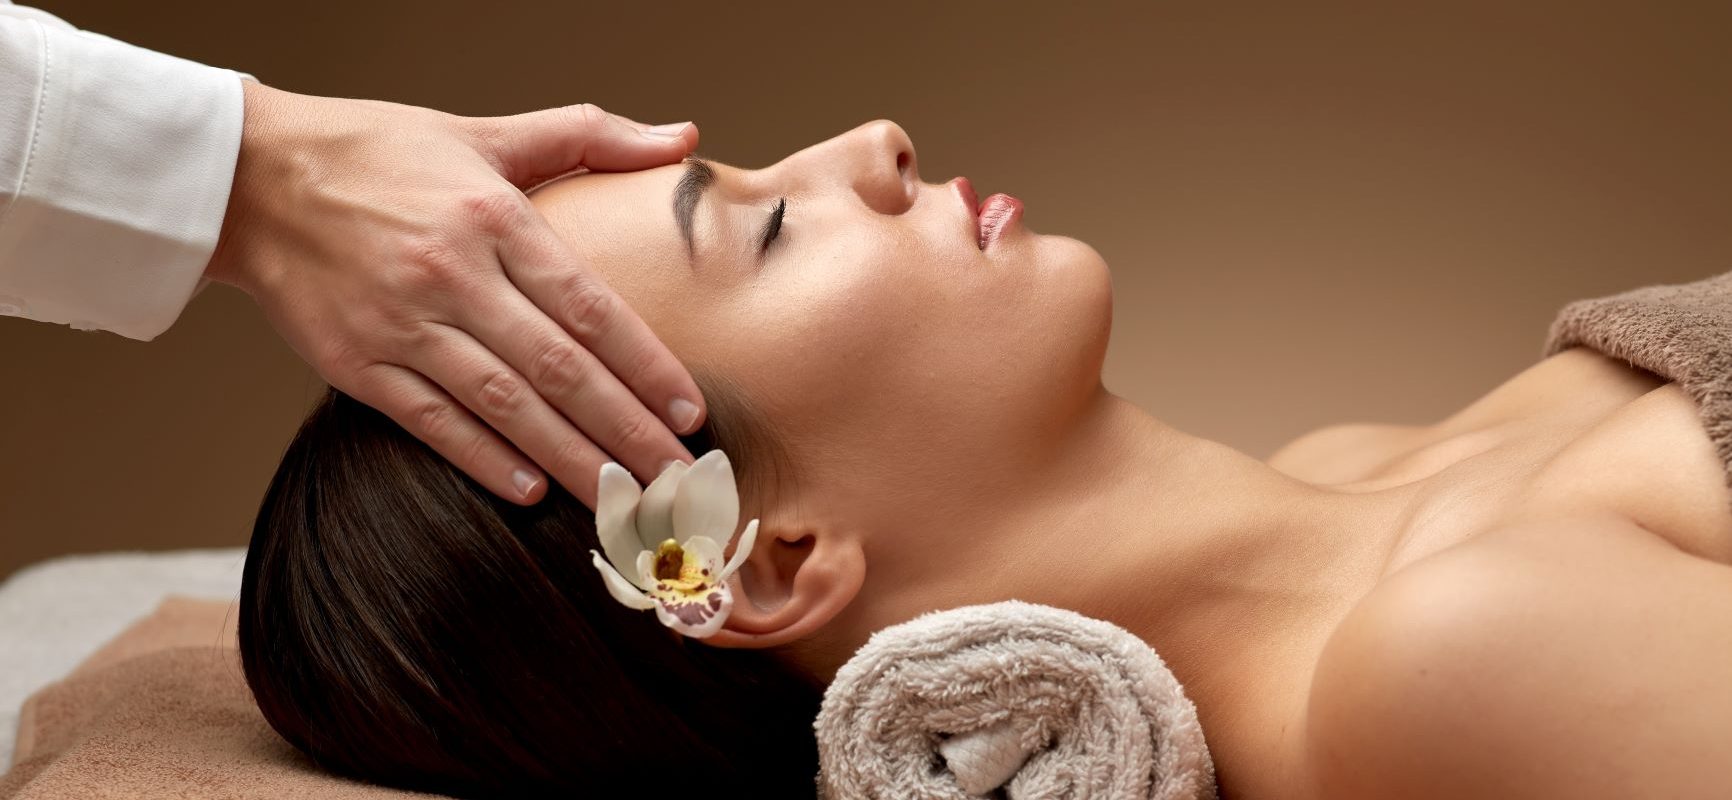 Japoński masaż twarzy - co warto o nim wiedzieć? Kobieta podczas zabiegu twarzy w gabinecie masażu.